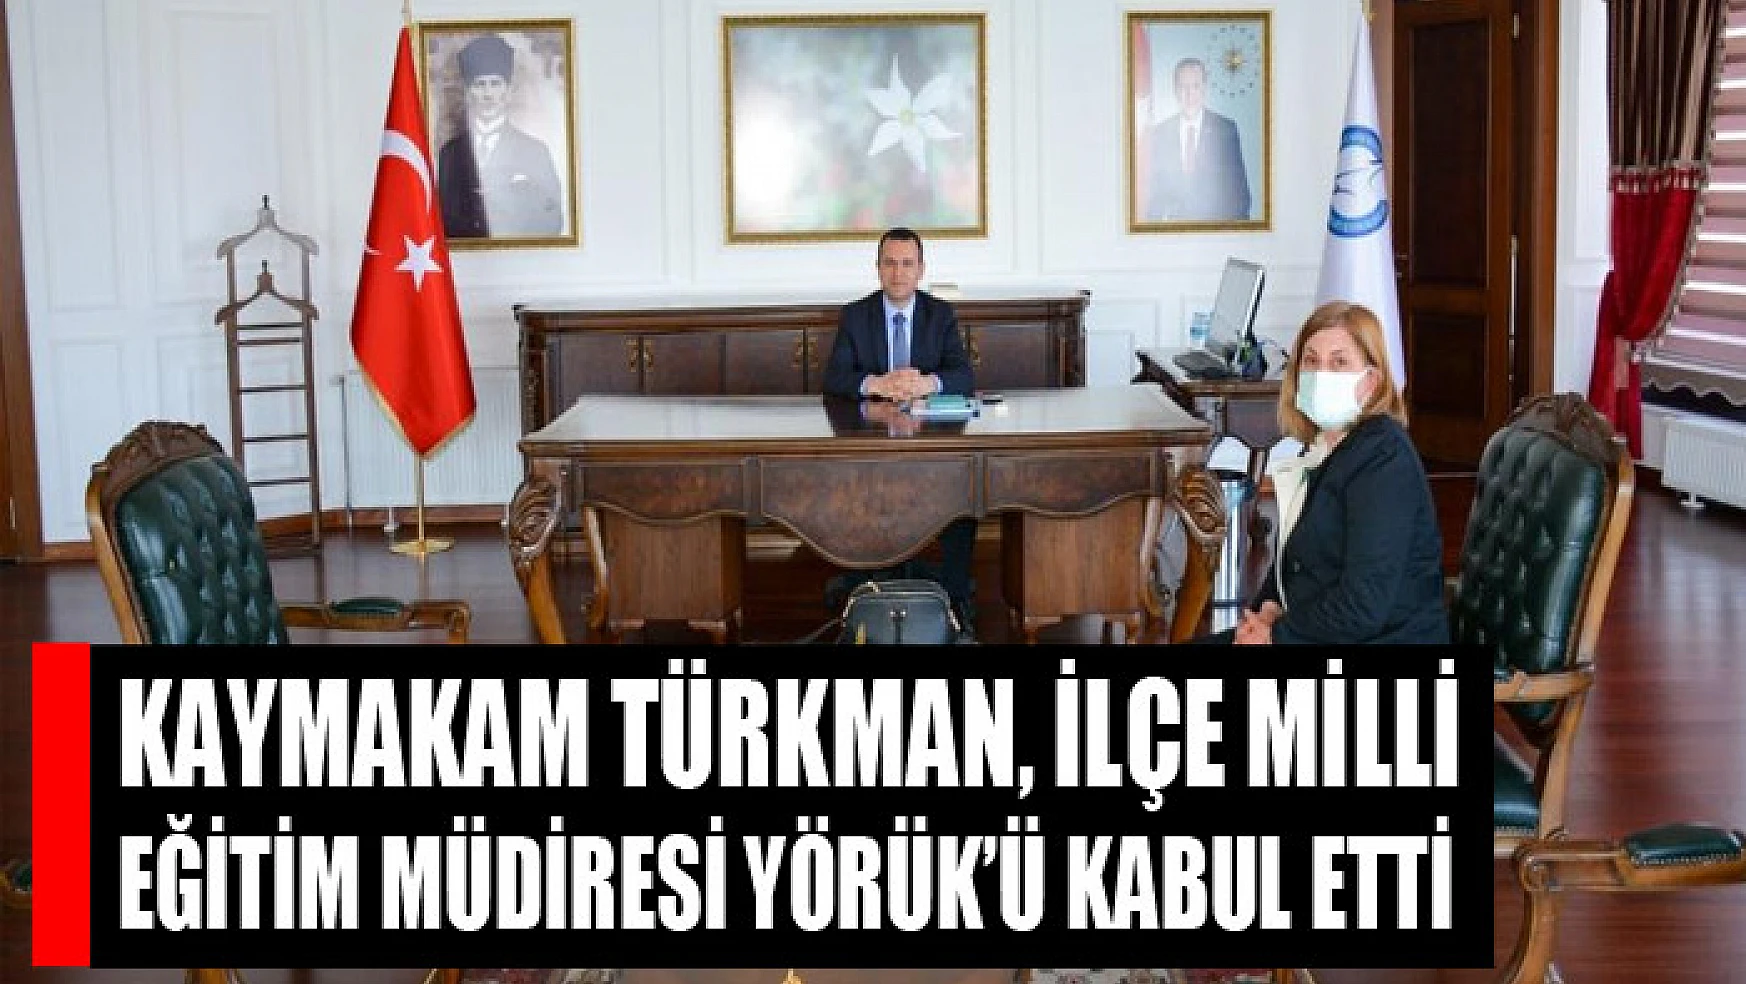 Kaymakam Türkman, İlçe Milli Eğitim Müdiresi Yörük'ü kabul etti